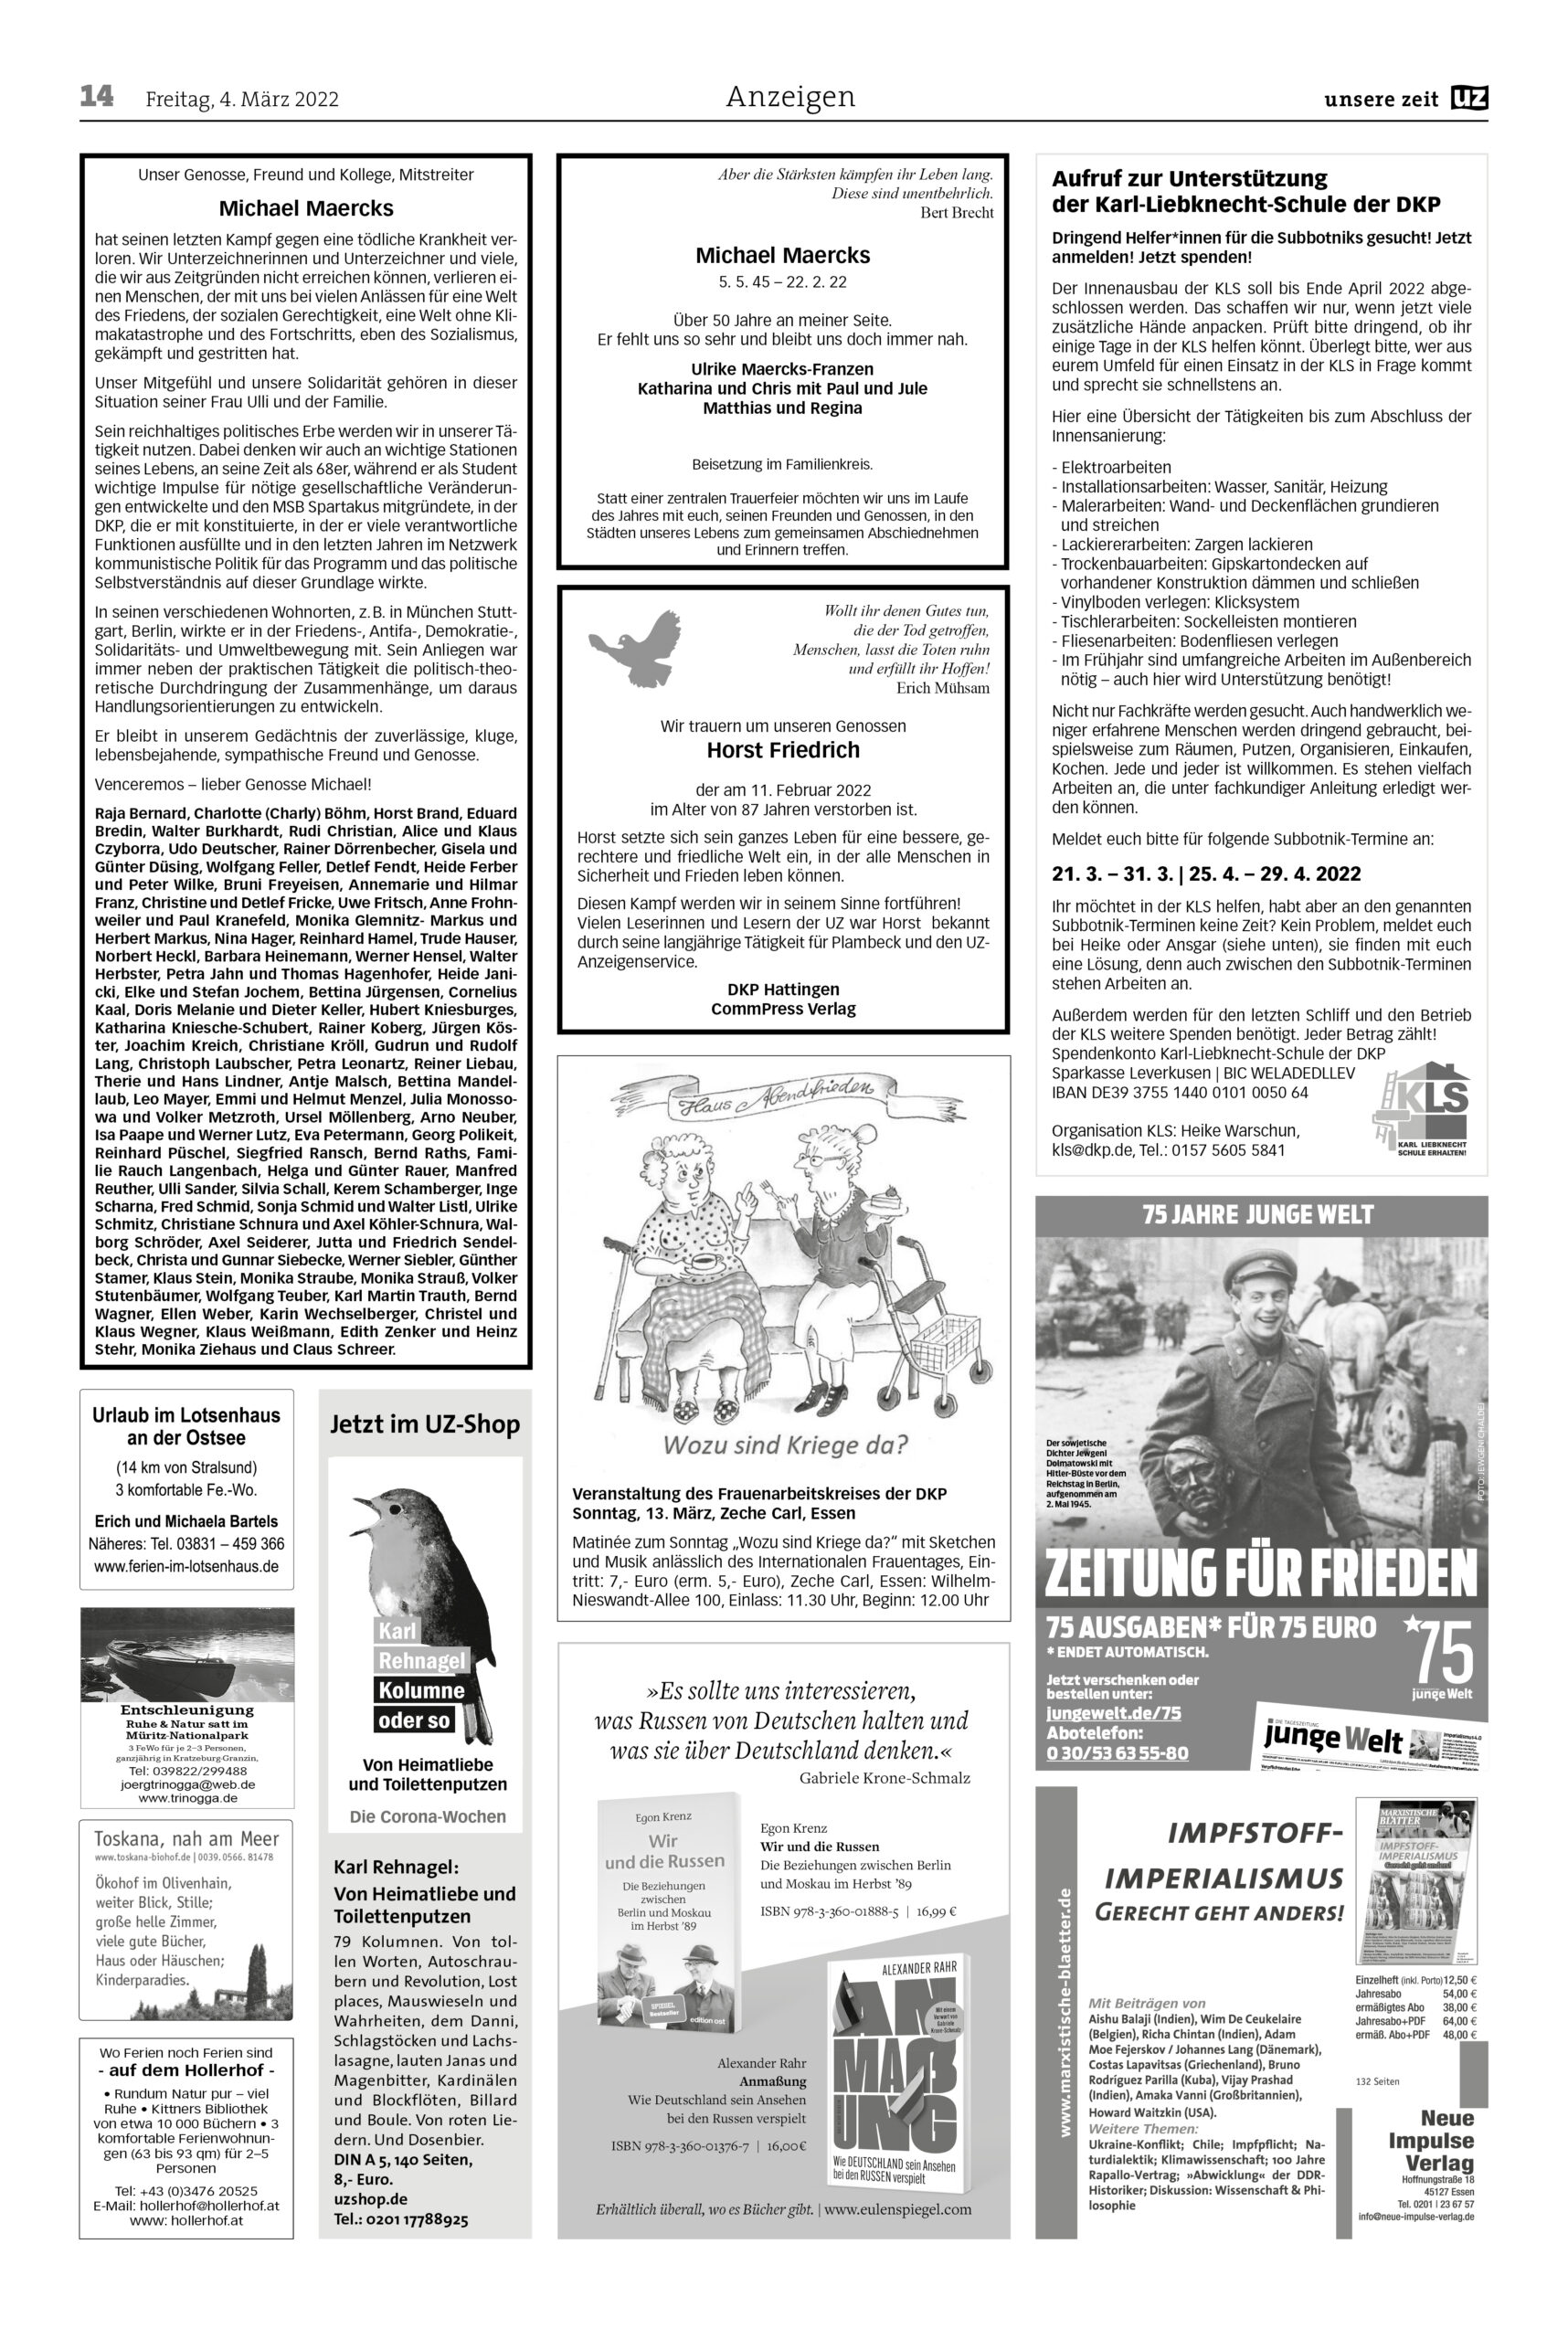 UZ 2022 09 Seite 14 scaled - Anzeigen 2022-09 - Anzeigen - Anzeigen